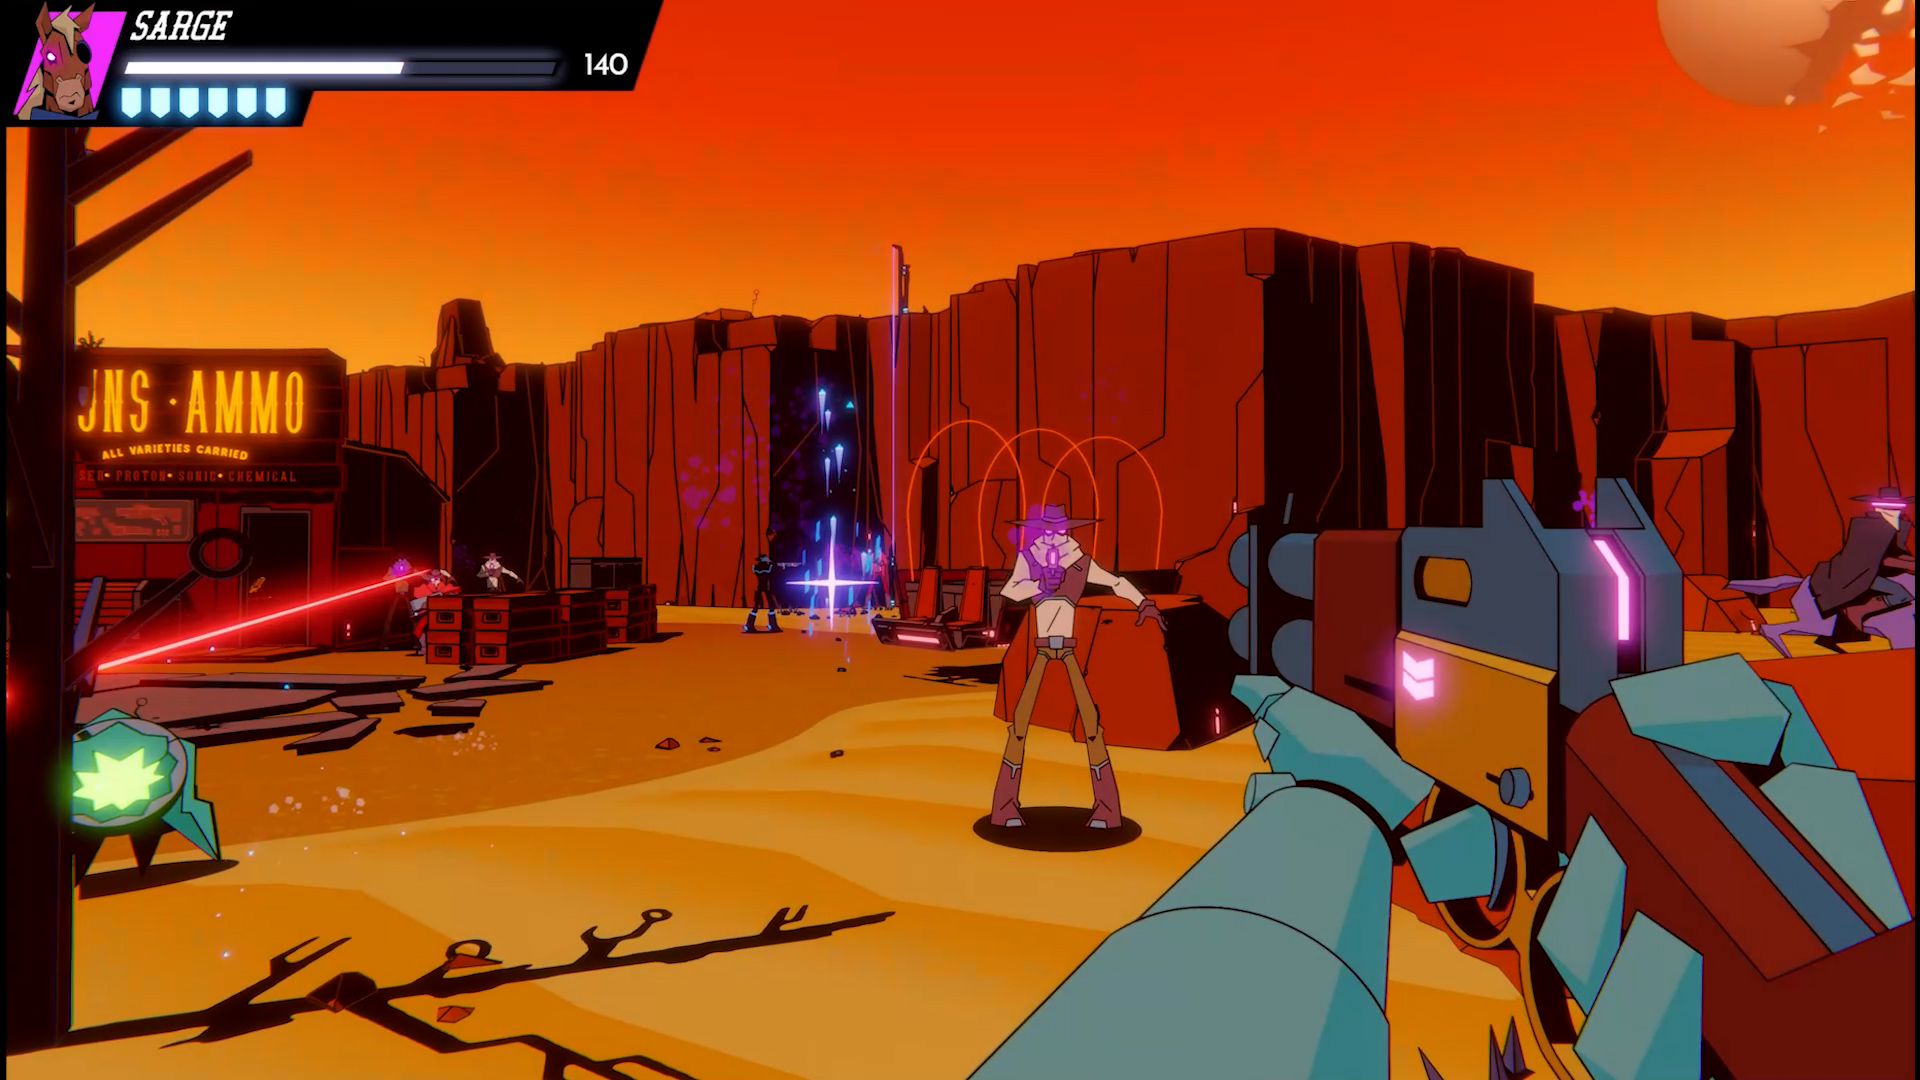 Wild bastards shooter gameplay in orange desert canyon